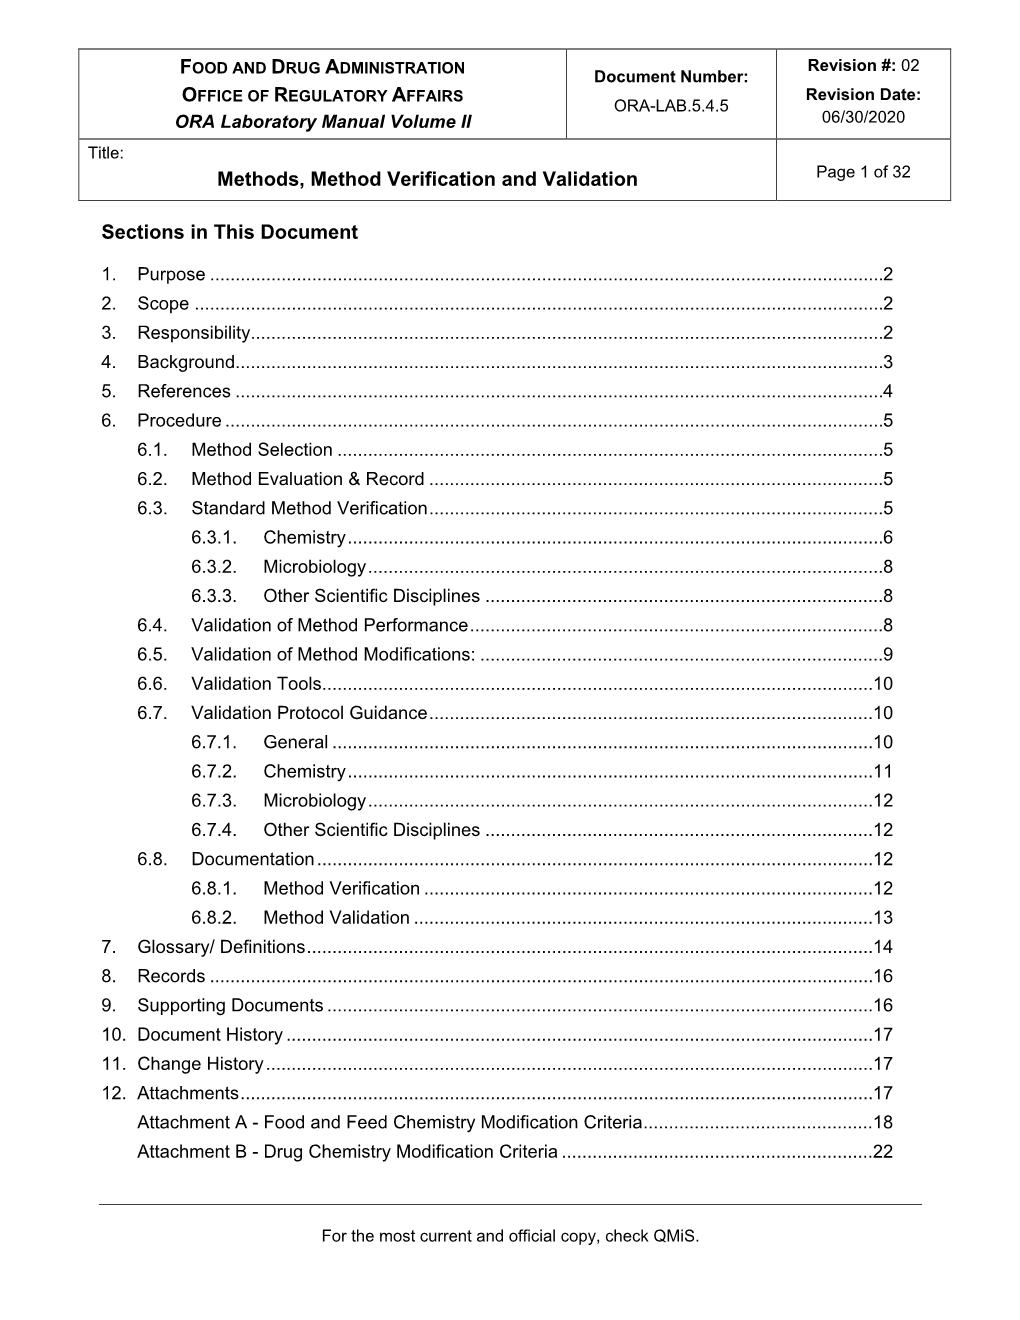 Methods, Method Verification and Validation Volume 2